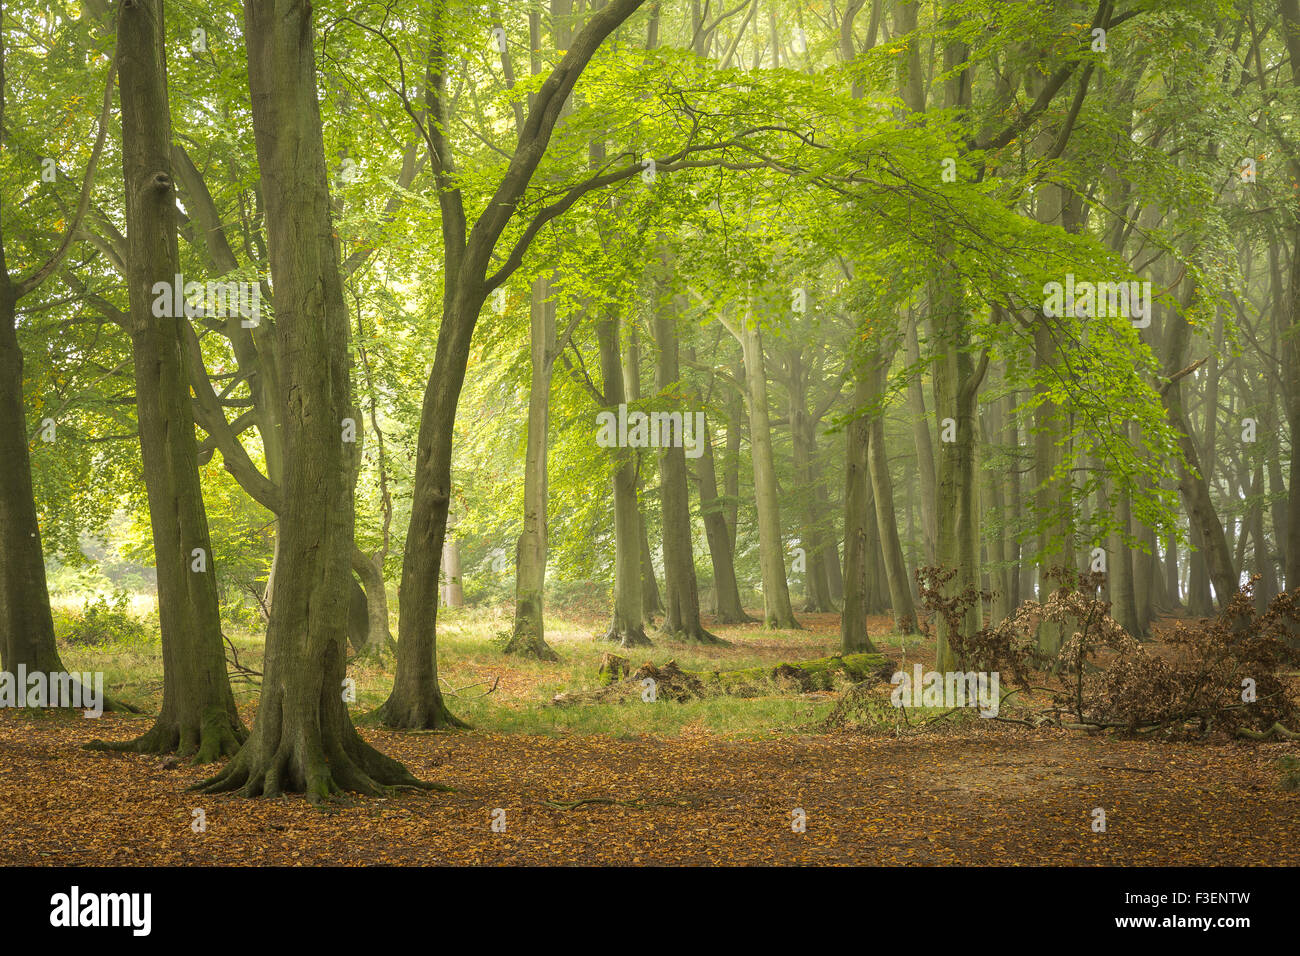 Les hêtres au début de l'automne en bois Dockey, Hertfordshire, Angleterre, Royaume-Uni. Banque D'Images